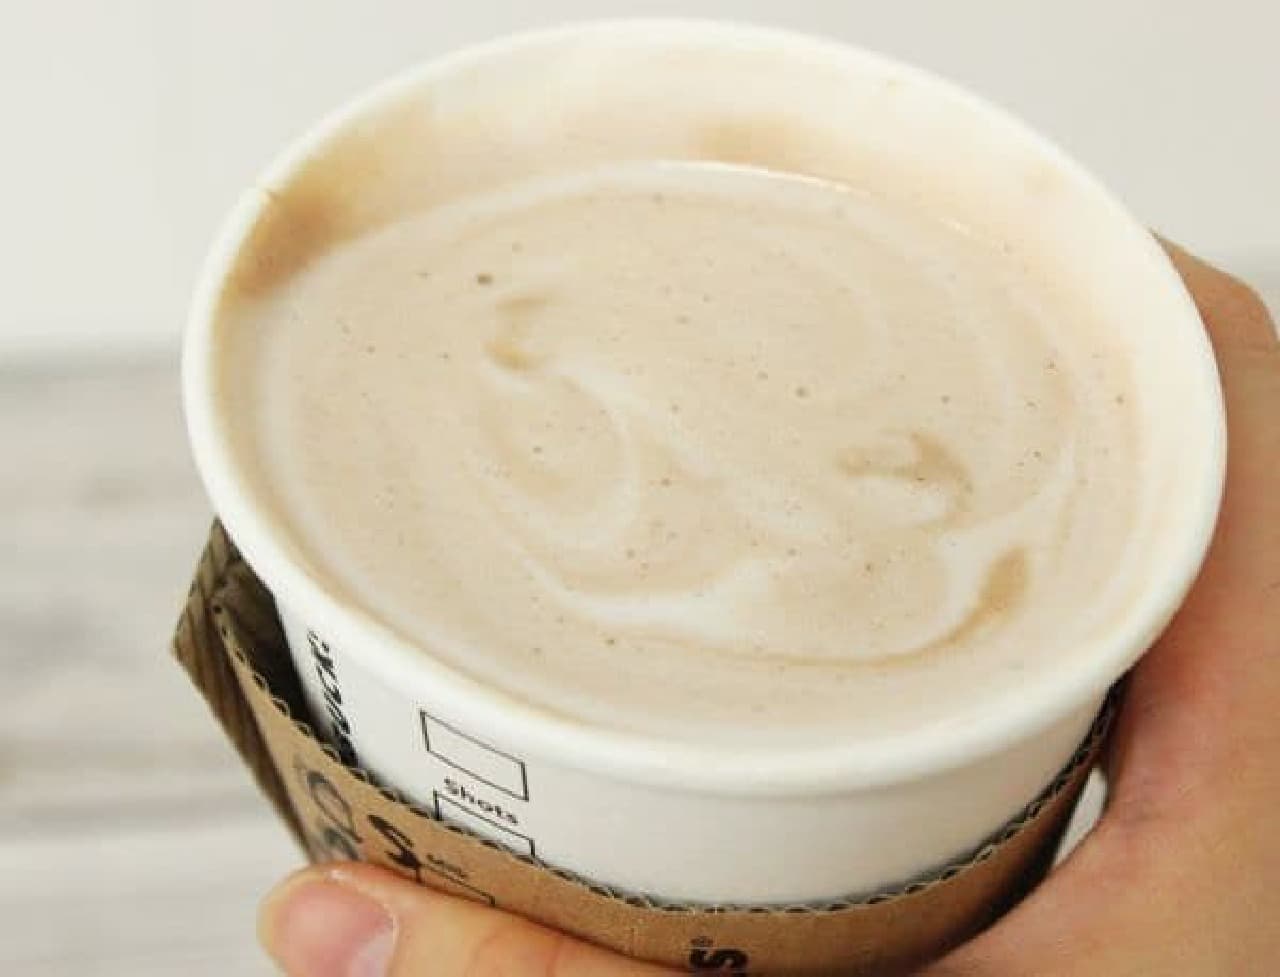 "Chocolate mint tea latte" made based on "mint citra stee latte"